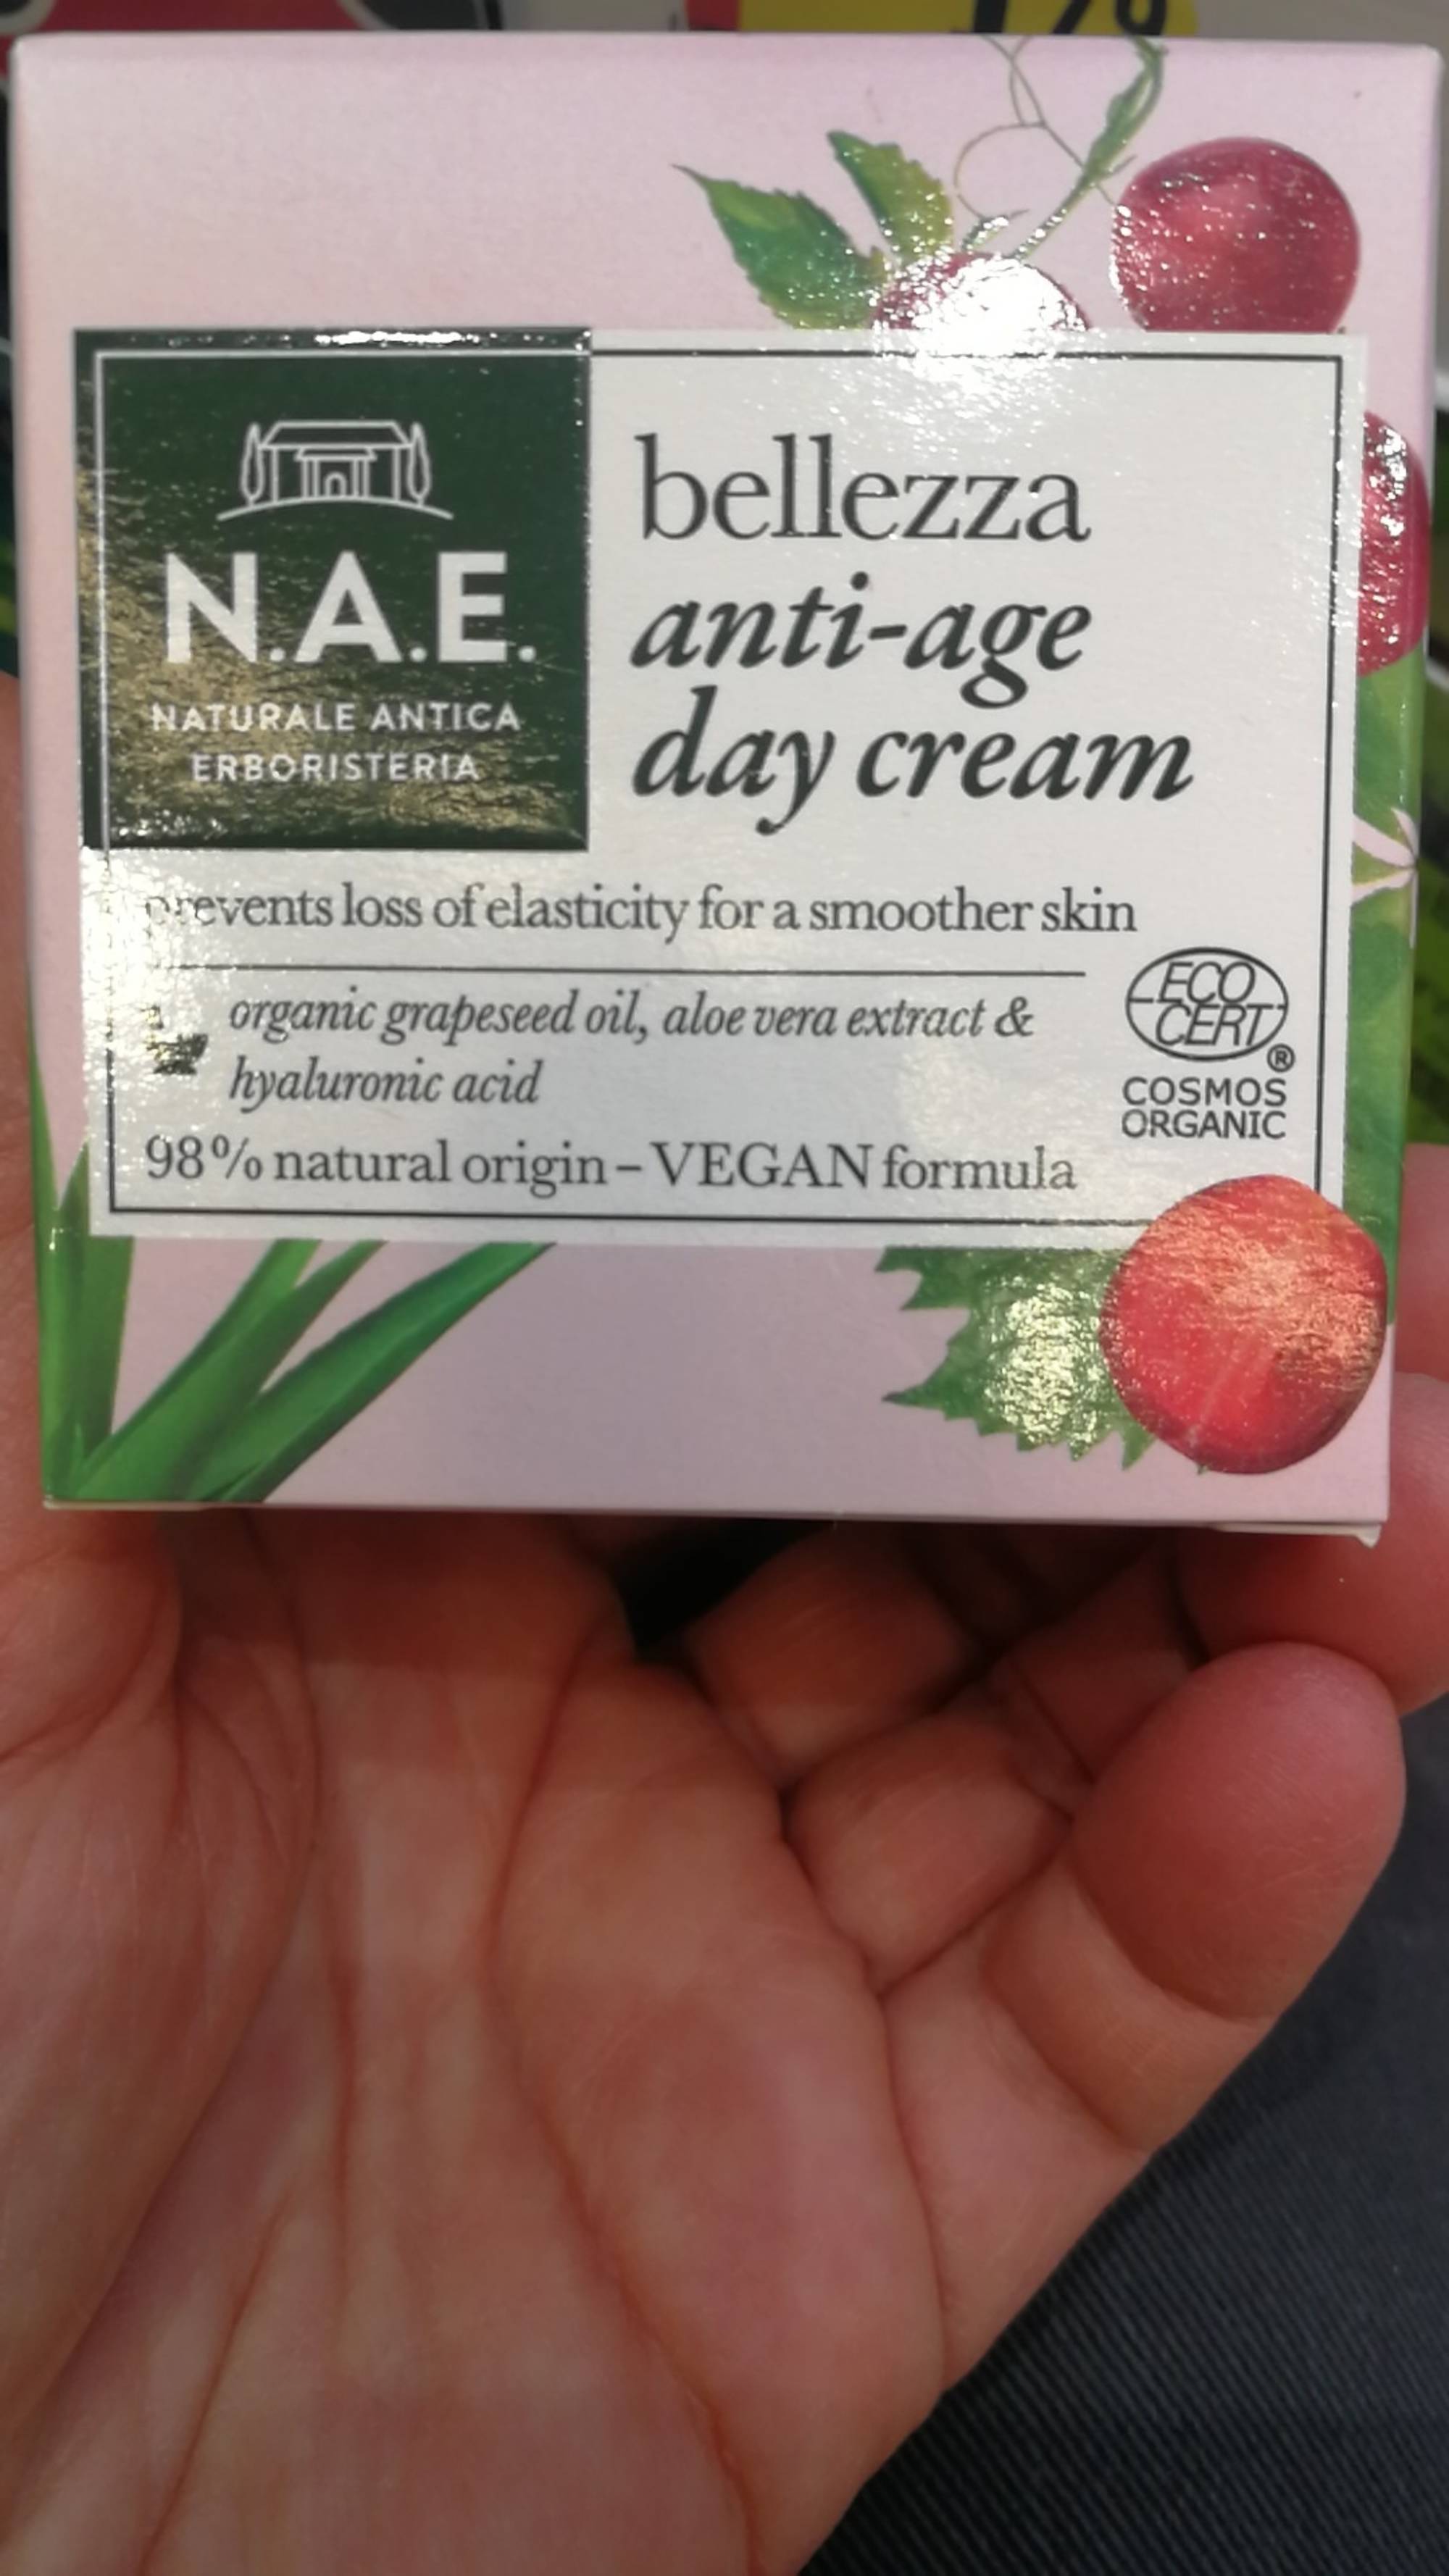 N.A.E. - Bellezza - Anti-age day cream